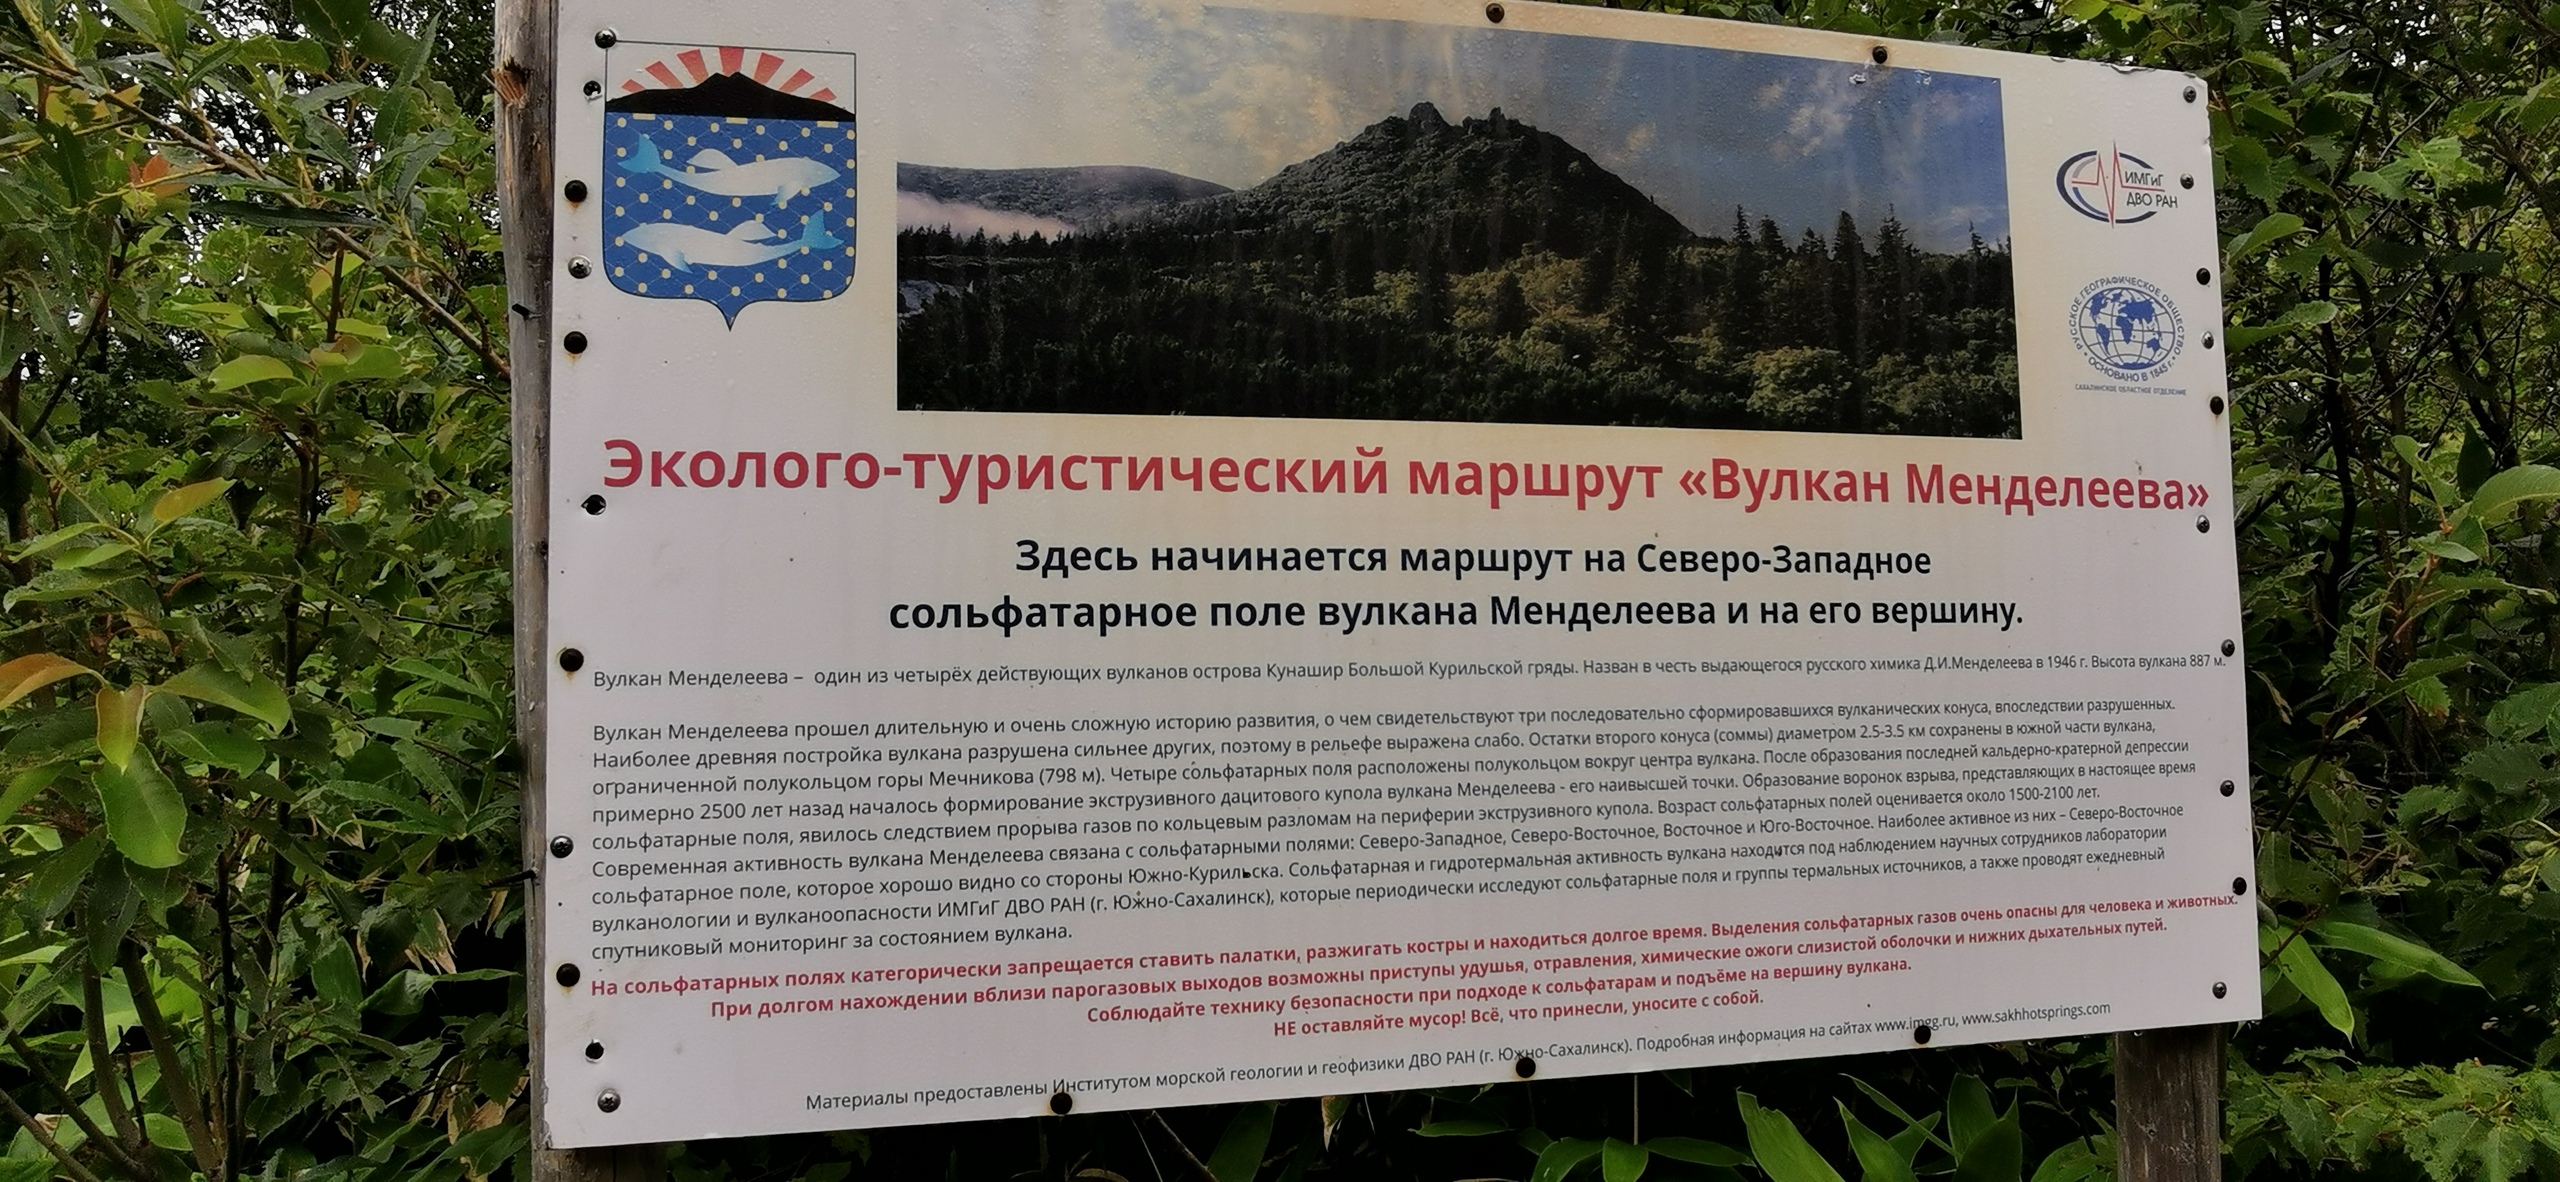 Сахалин и Курилы-2021. Вулкан Менделеева 